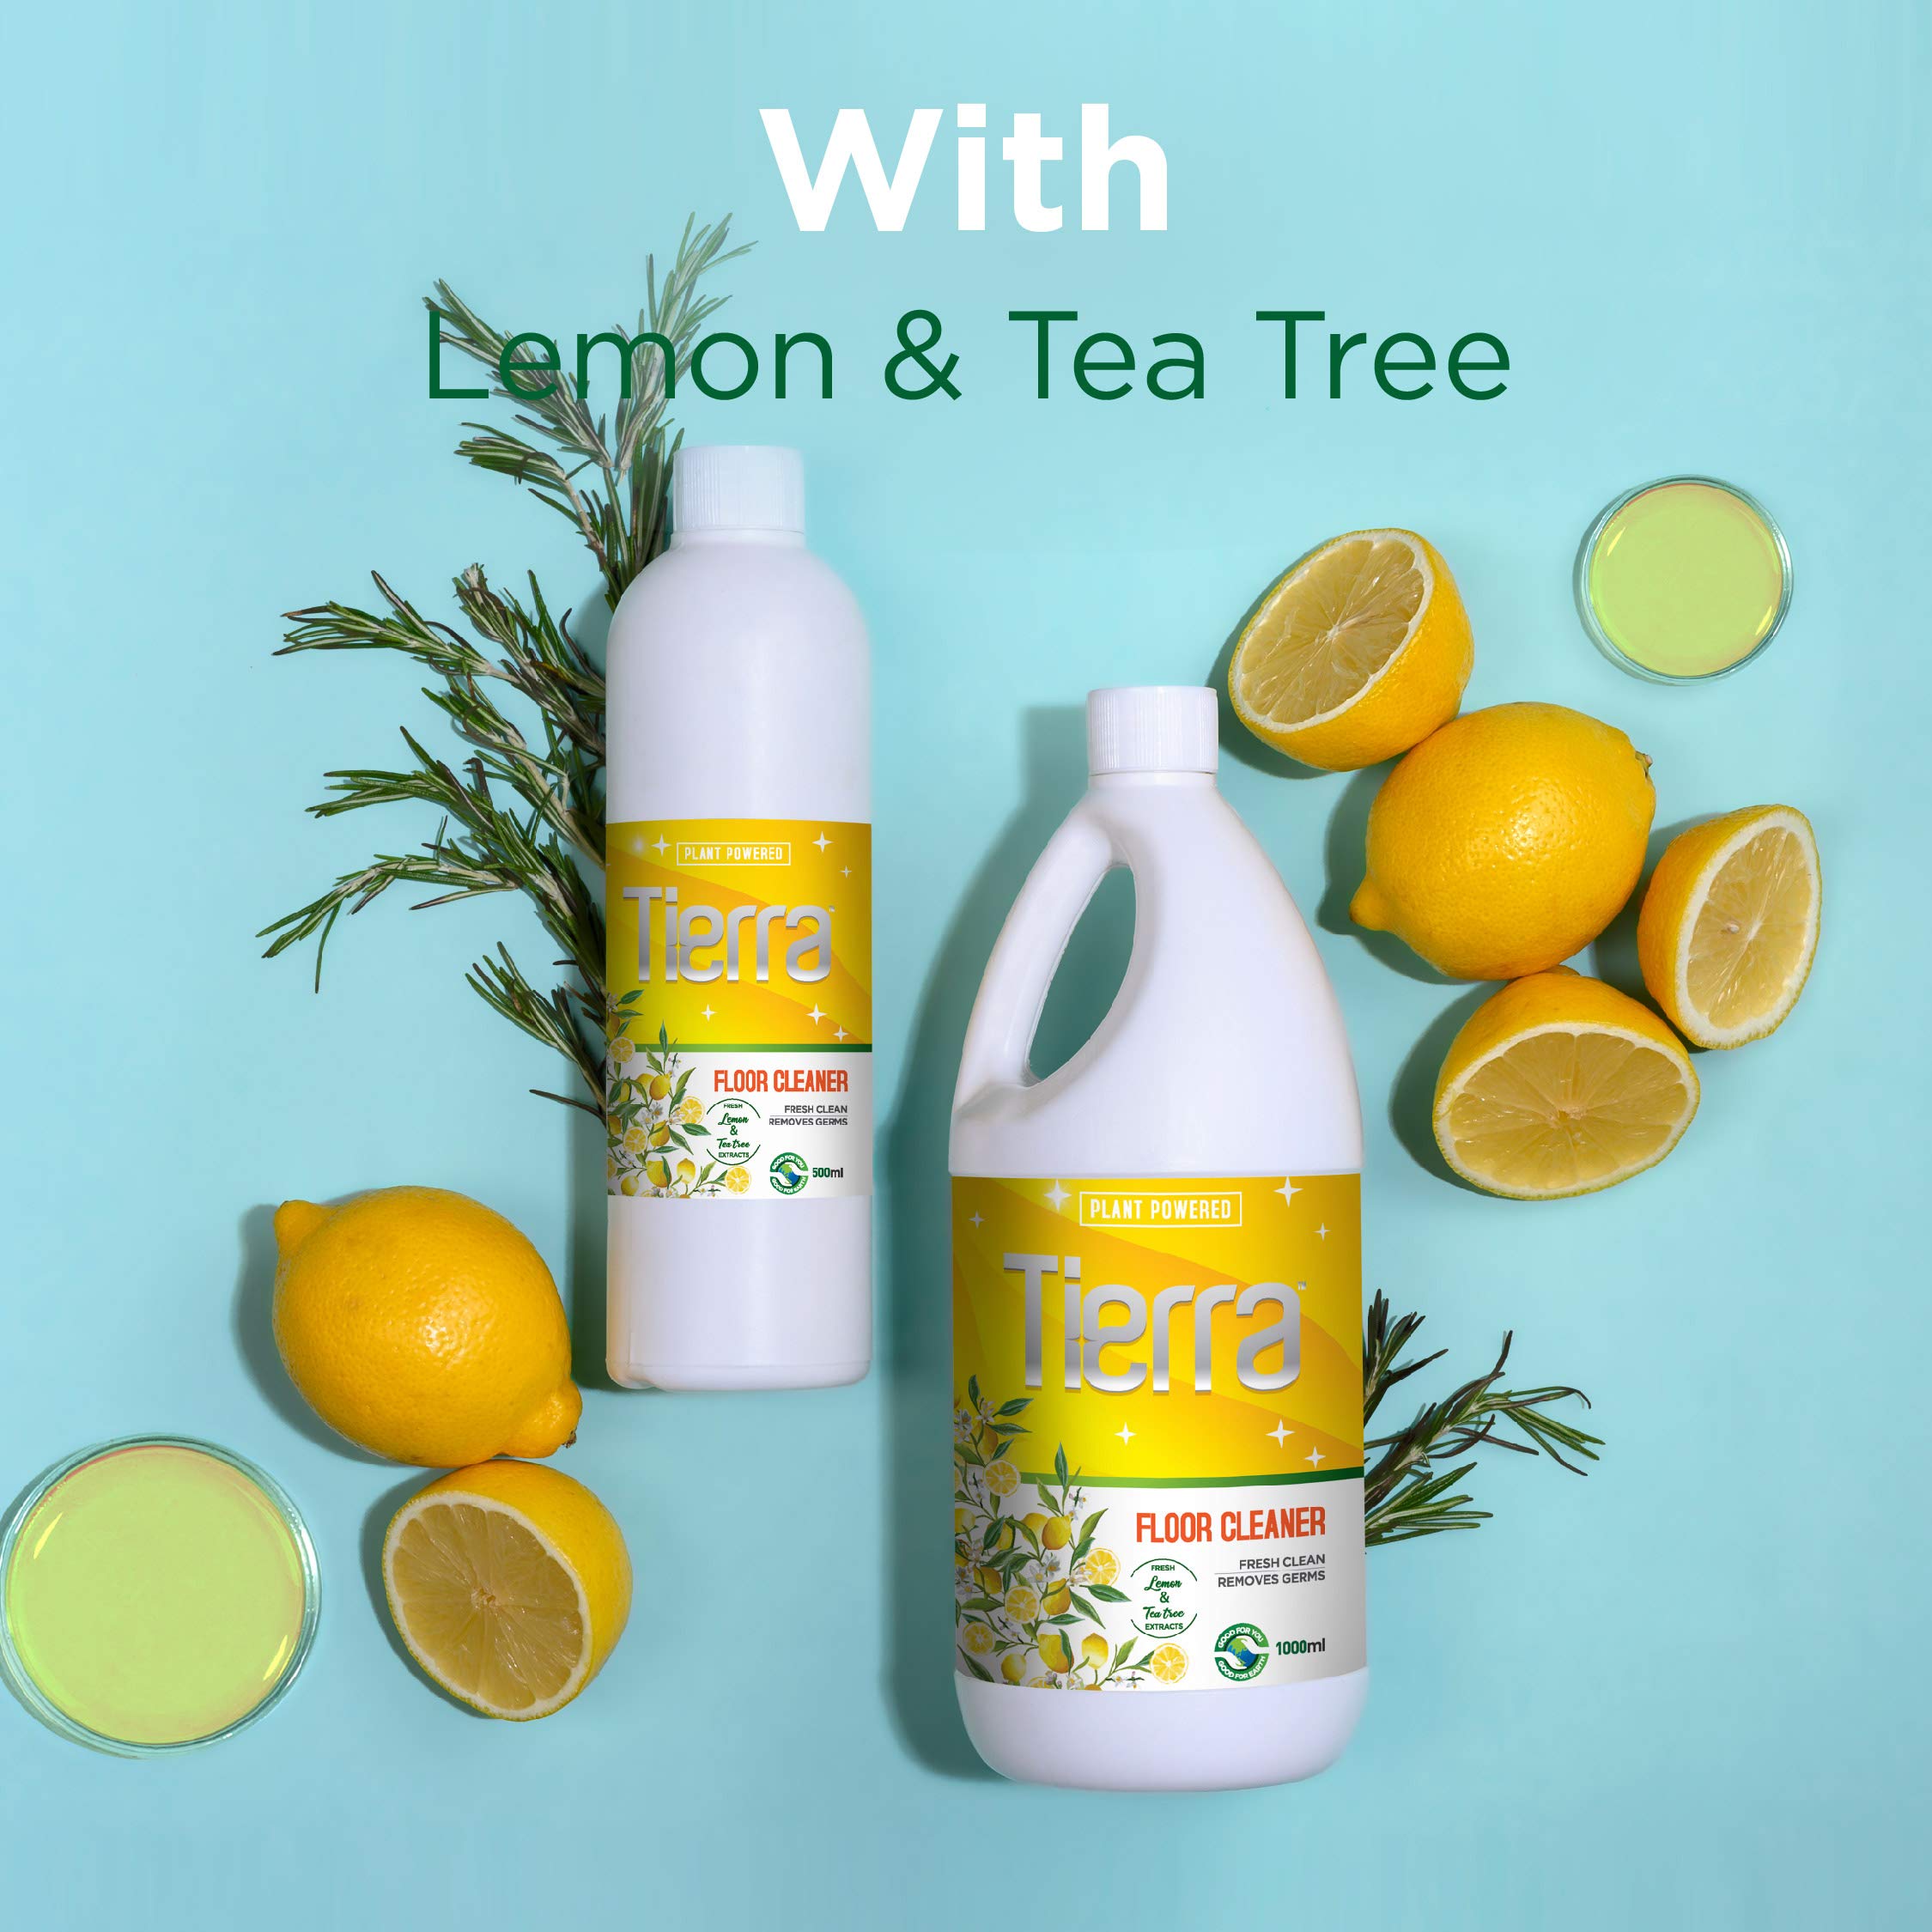 Tierra Floor Cleaner | Lemon & Tea-Tree Extracts - 1000 ml